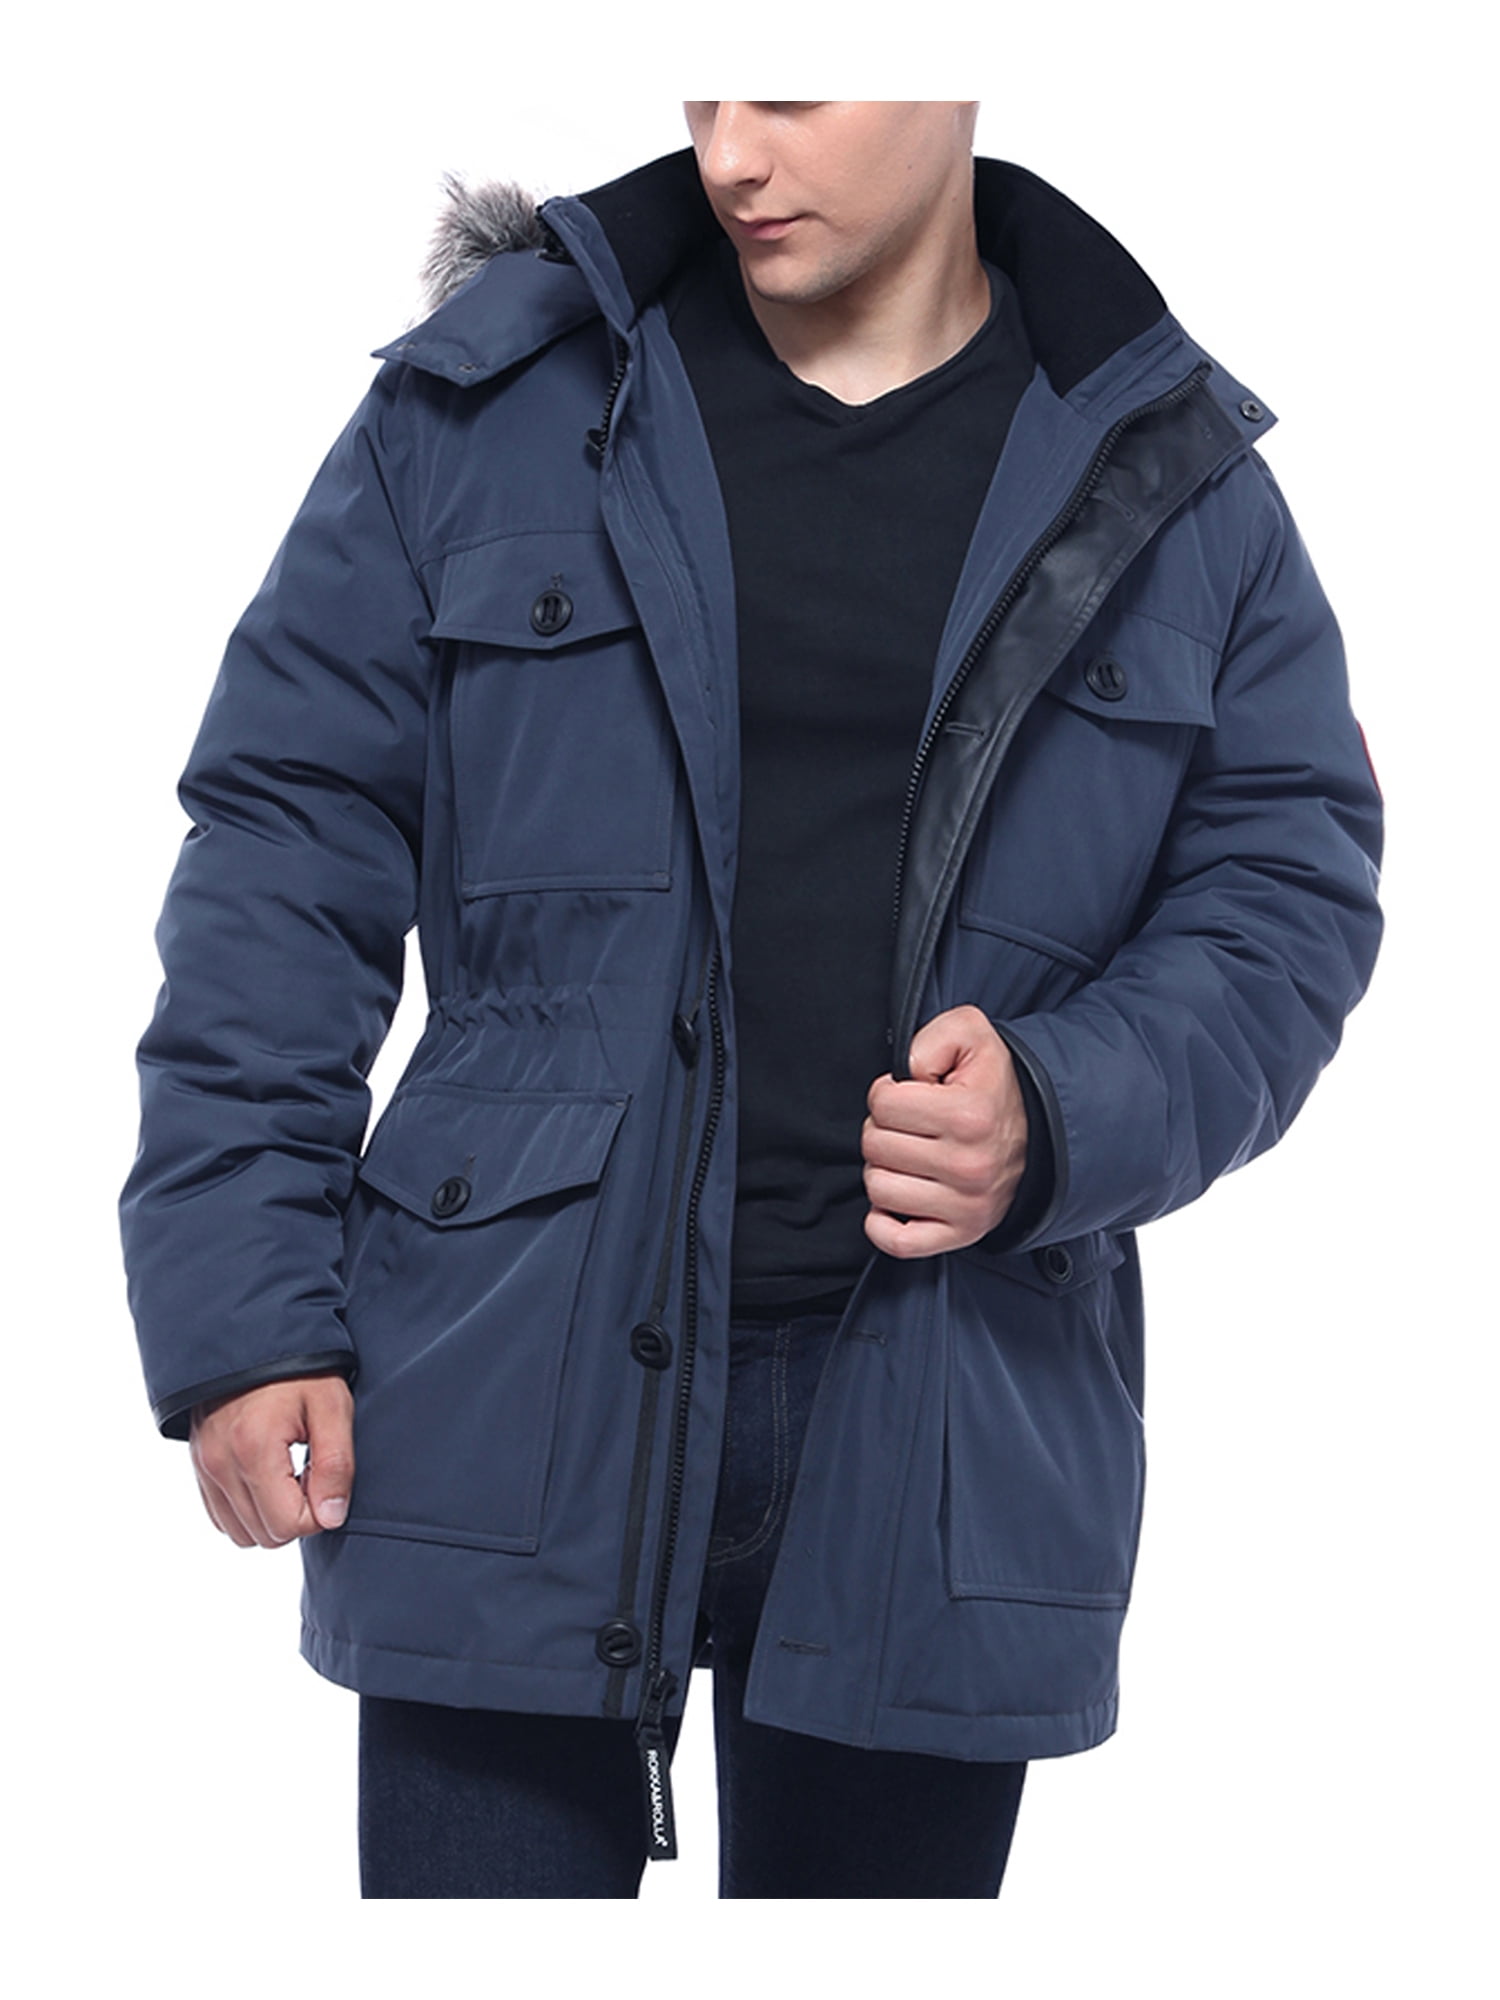 Rokka&Rolla Men's Parka Warm Winter Coat with Faux Fur Hood Jacket ...